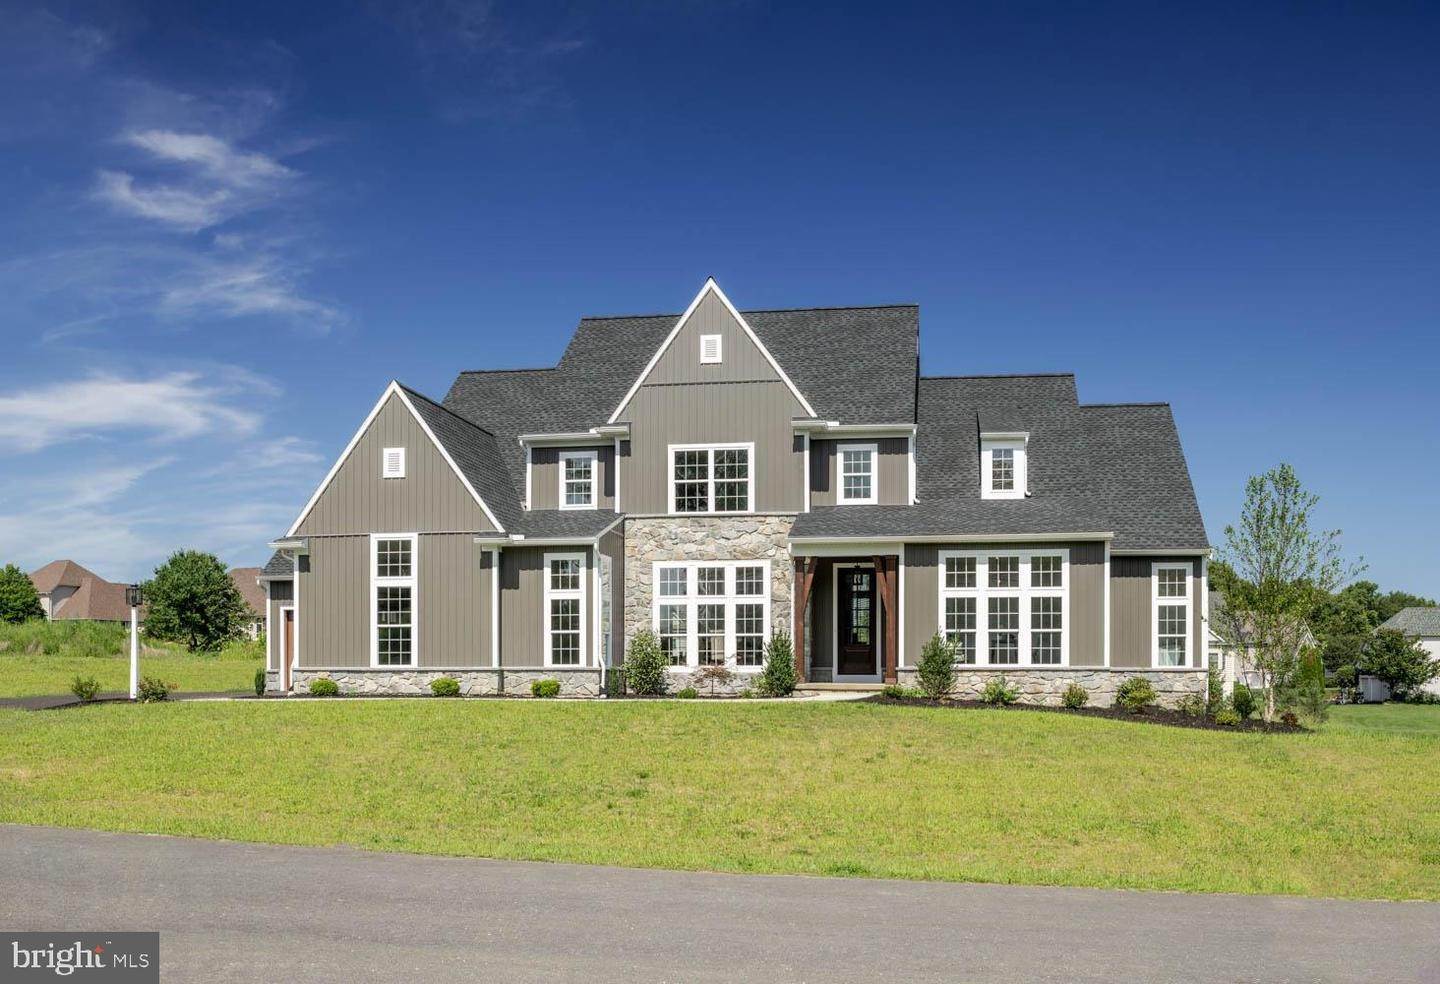 住宅 为 销售 在 OAK RIDGE DR #1 Quarryville, 宾夕法尼亚州 17566 美国